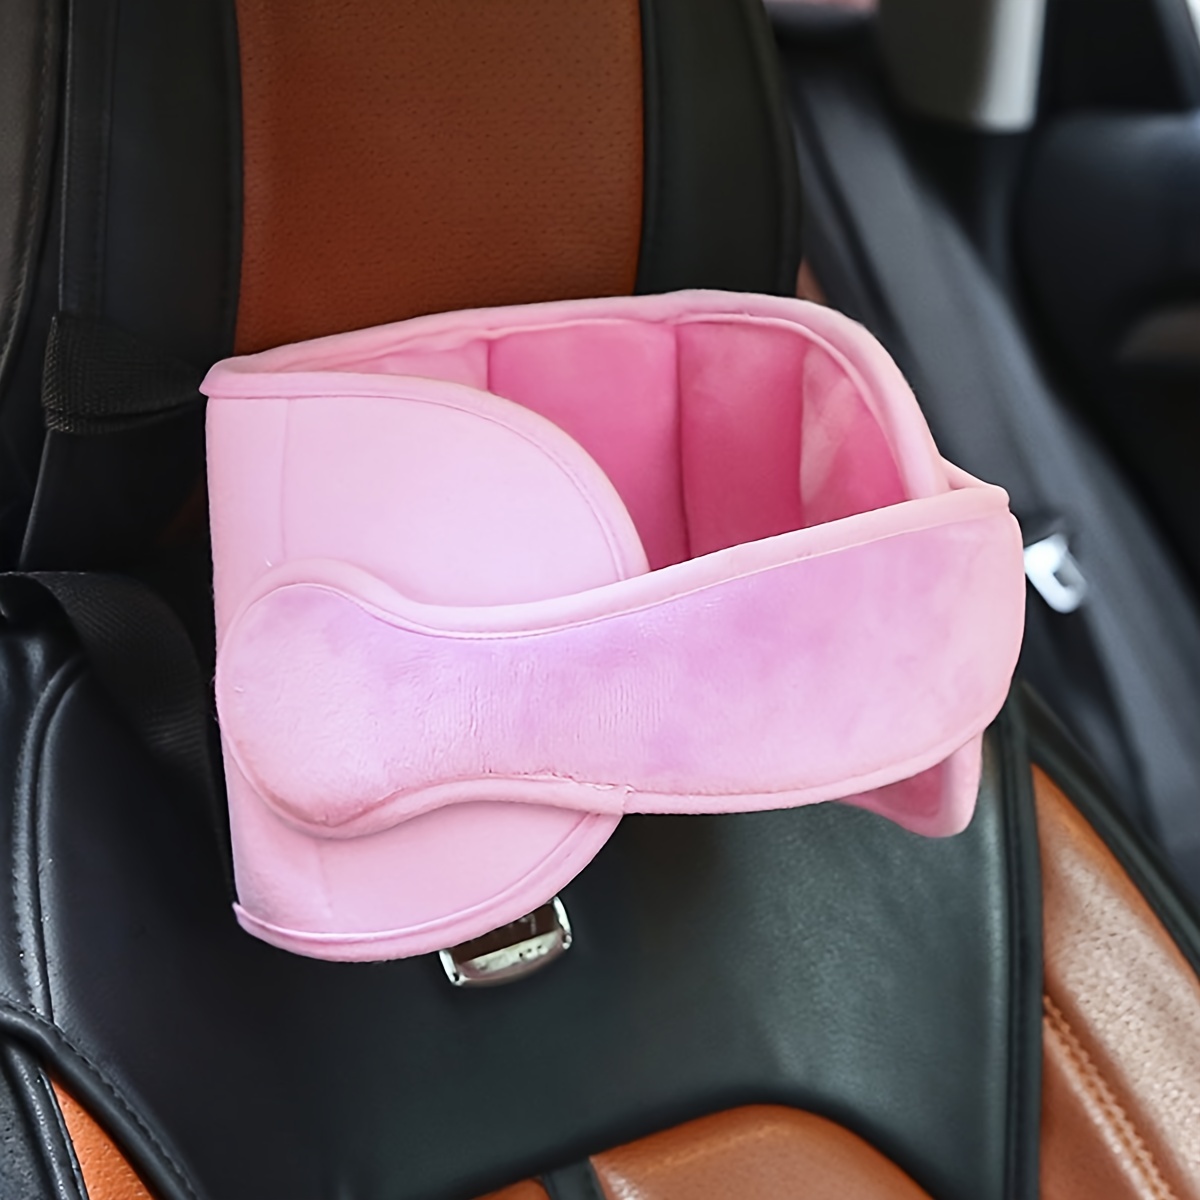  Soporte para la cabeza del asiento de automóvil para niños,  posicionador de sueño cómodo y seguro, alivio del cuello y soporte para la  cabeza del asiento de automóvil para niños pequeños (